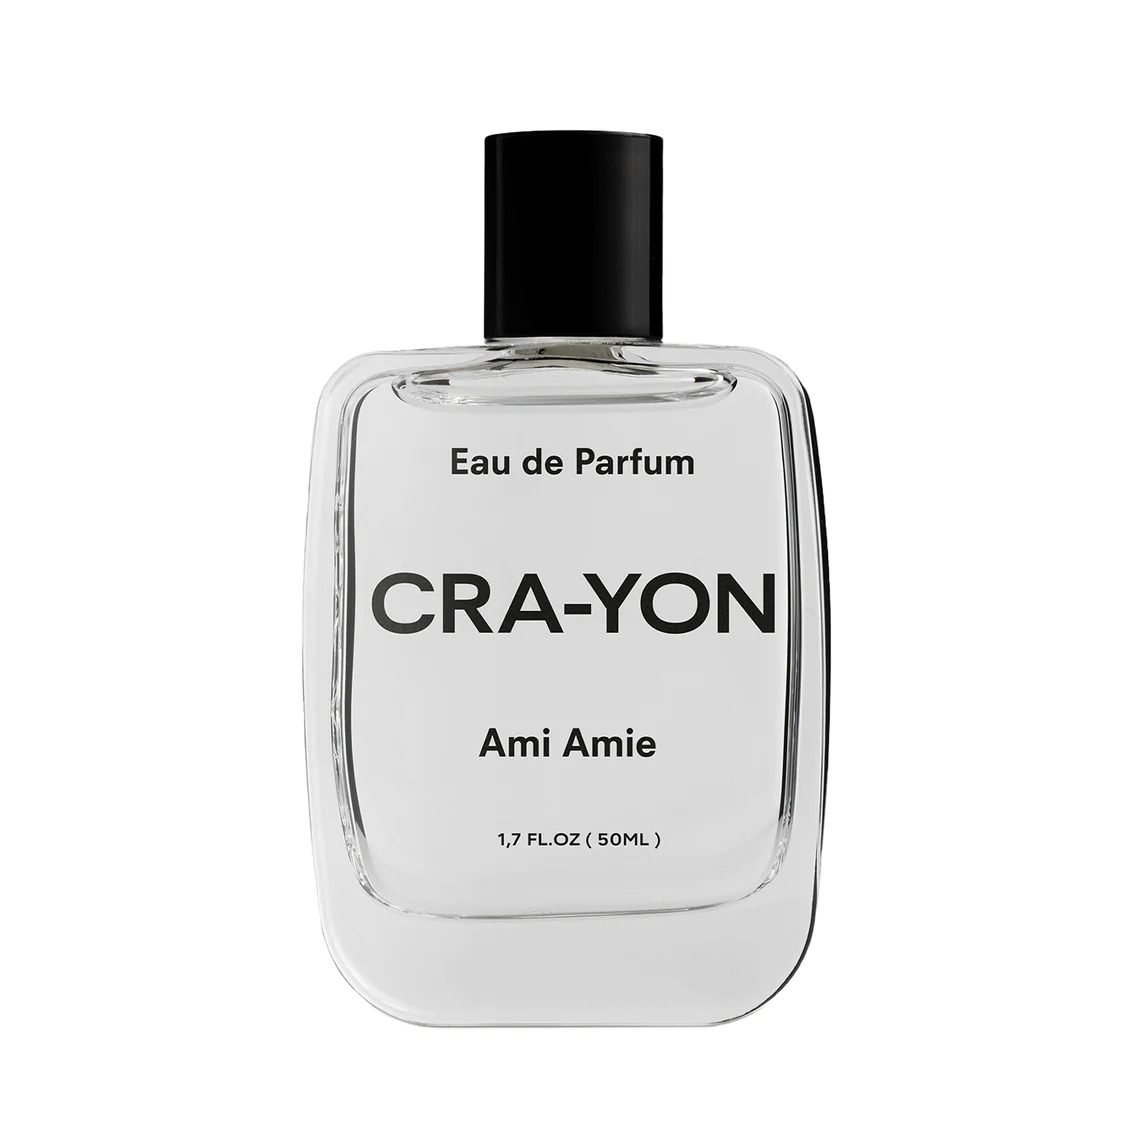 CRA-YON Ami Amie Eau De Parfums 50ml